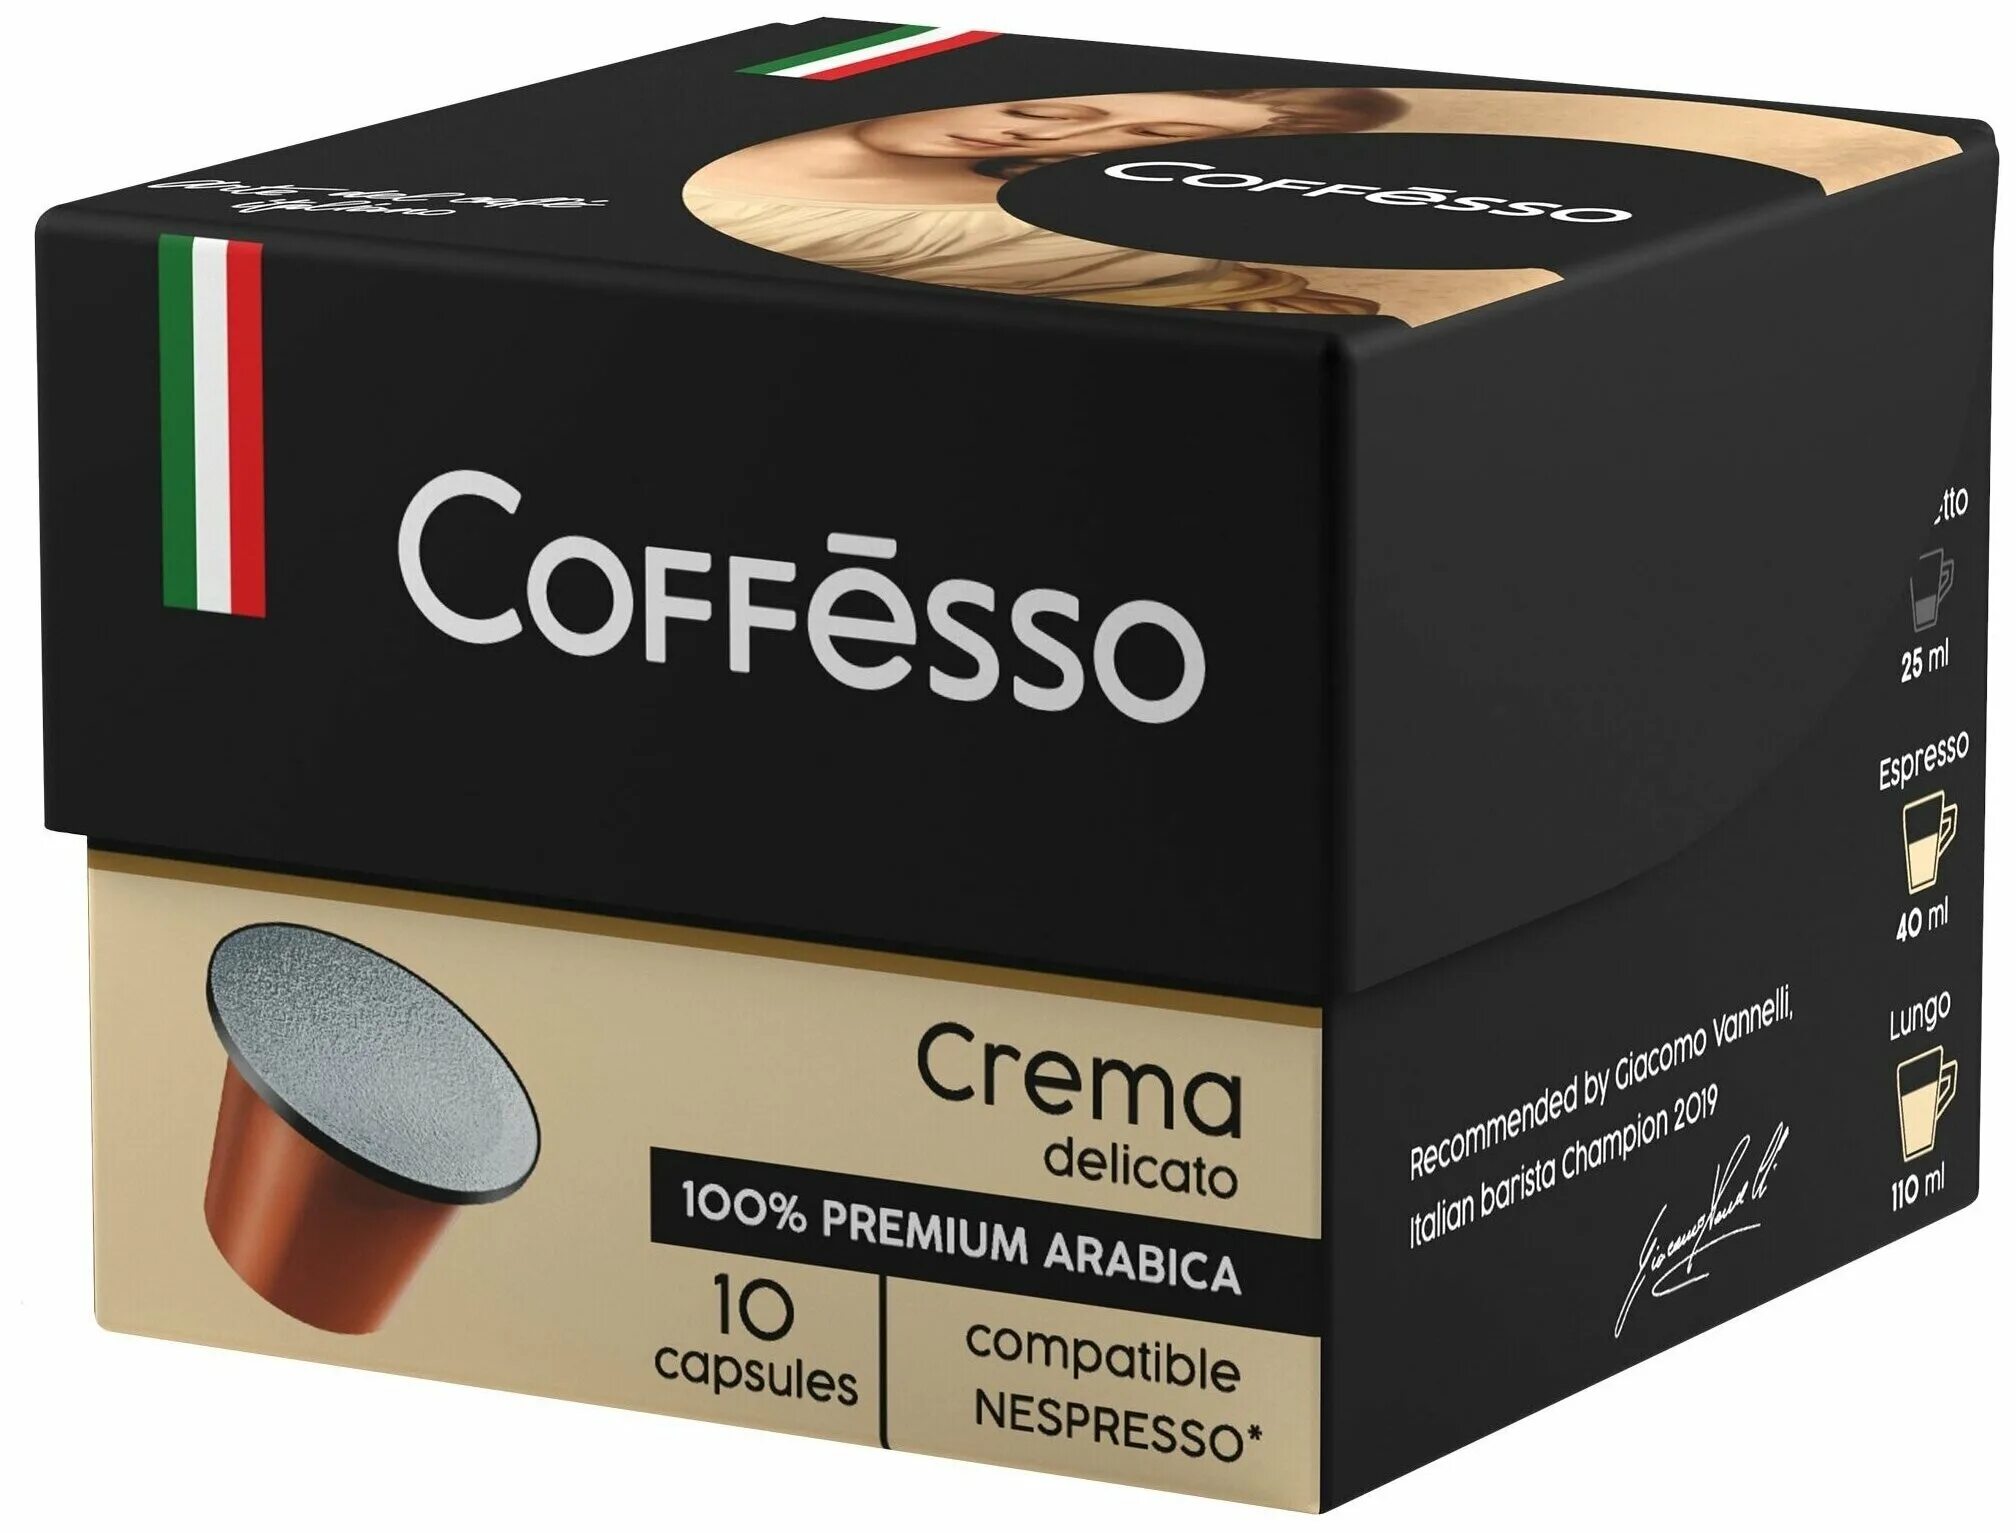 Coffesso купить. Кофе в капсулах crema Nespresso. Кофессо капсулы delicato. Кофе в капсулах Coffesso crema delicato. Кофе 10 капсул Coffesso.